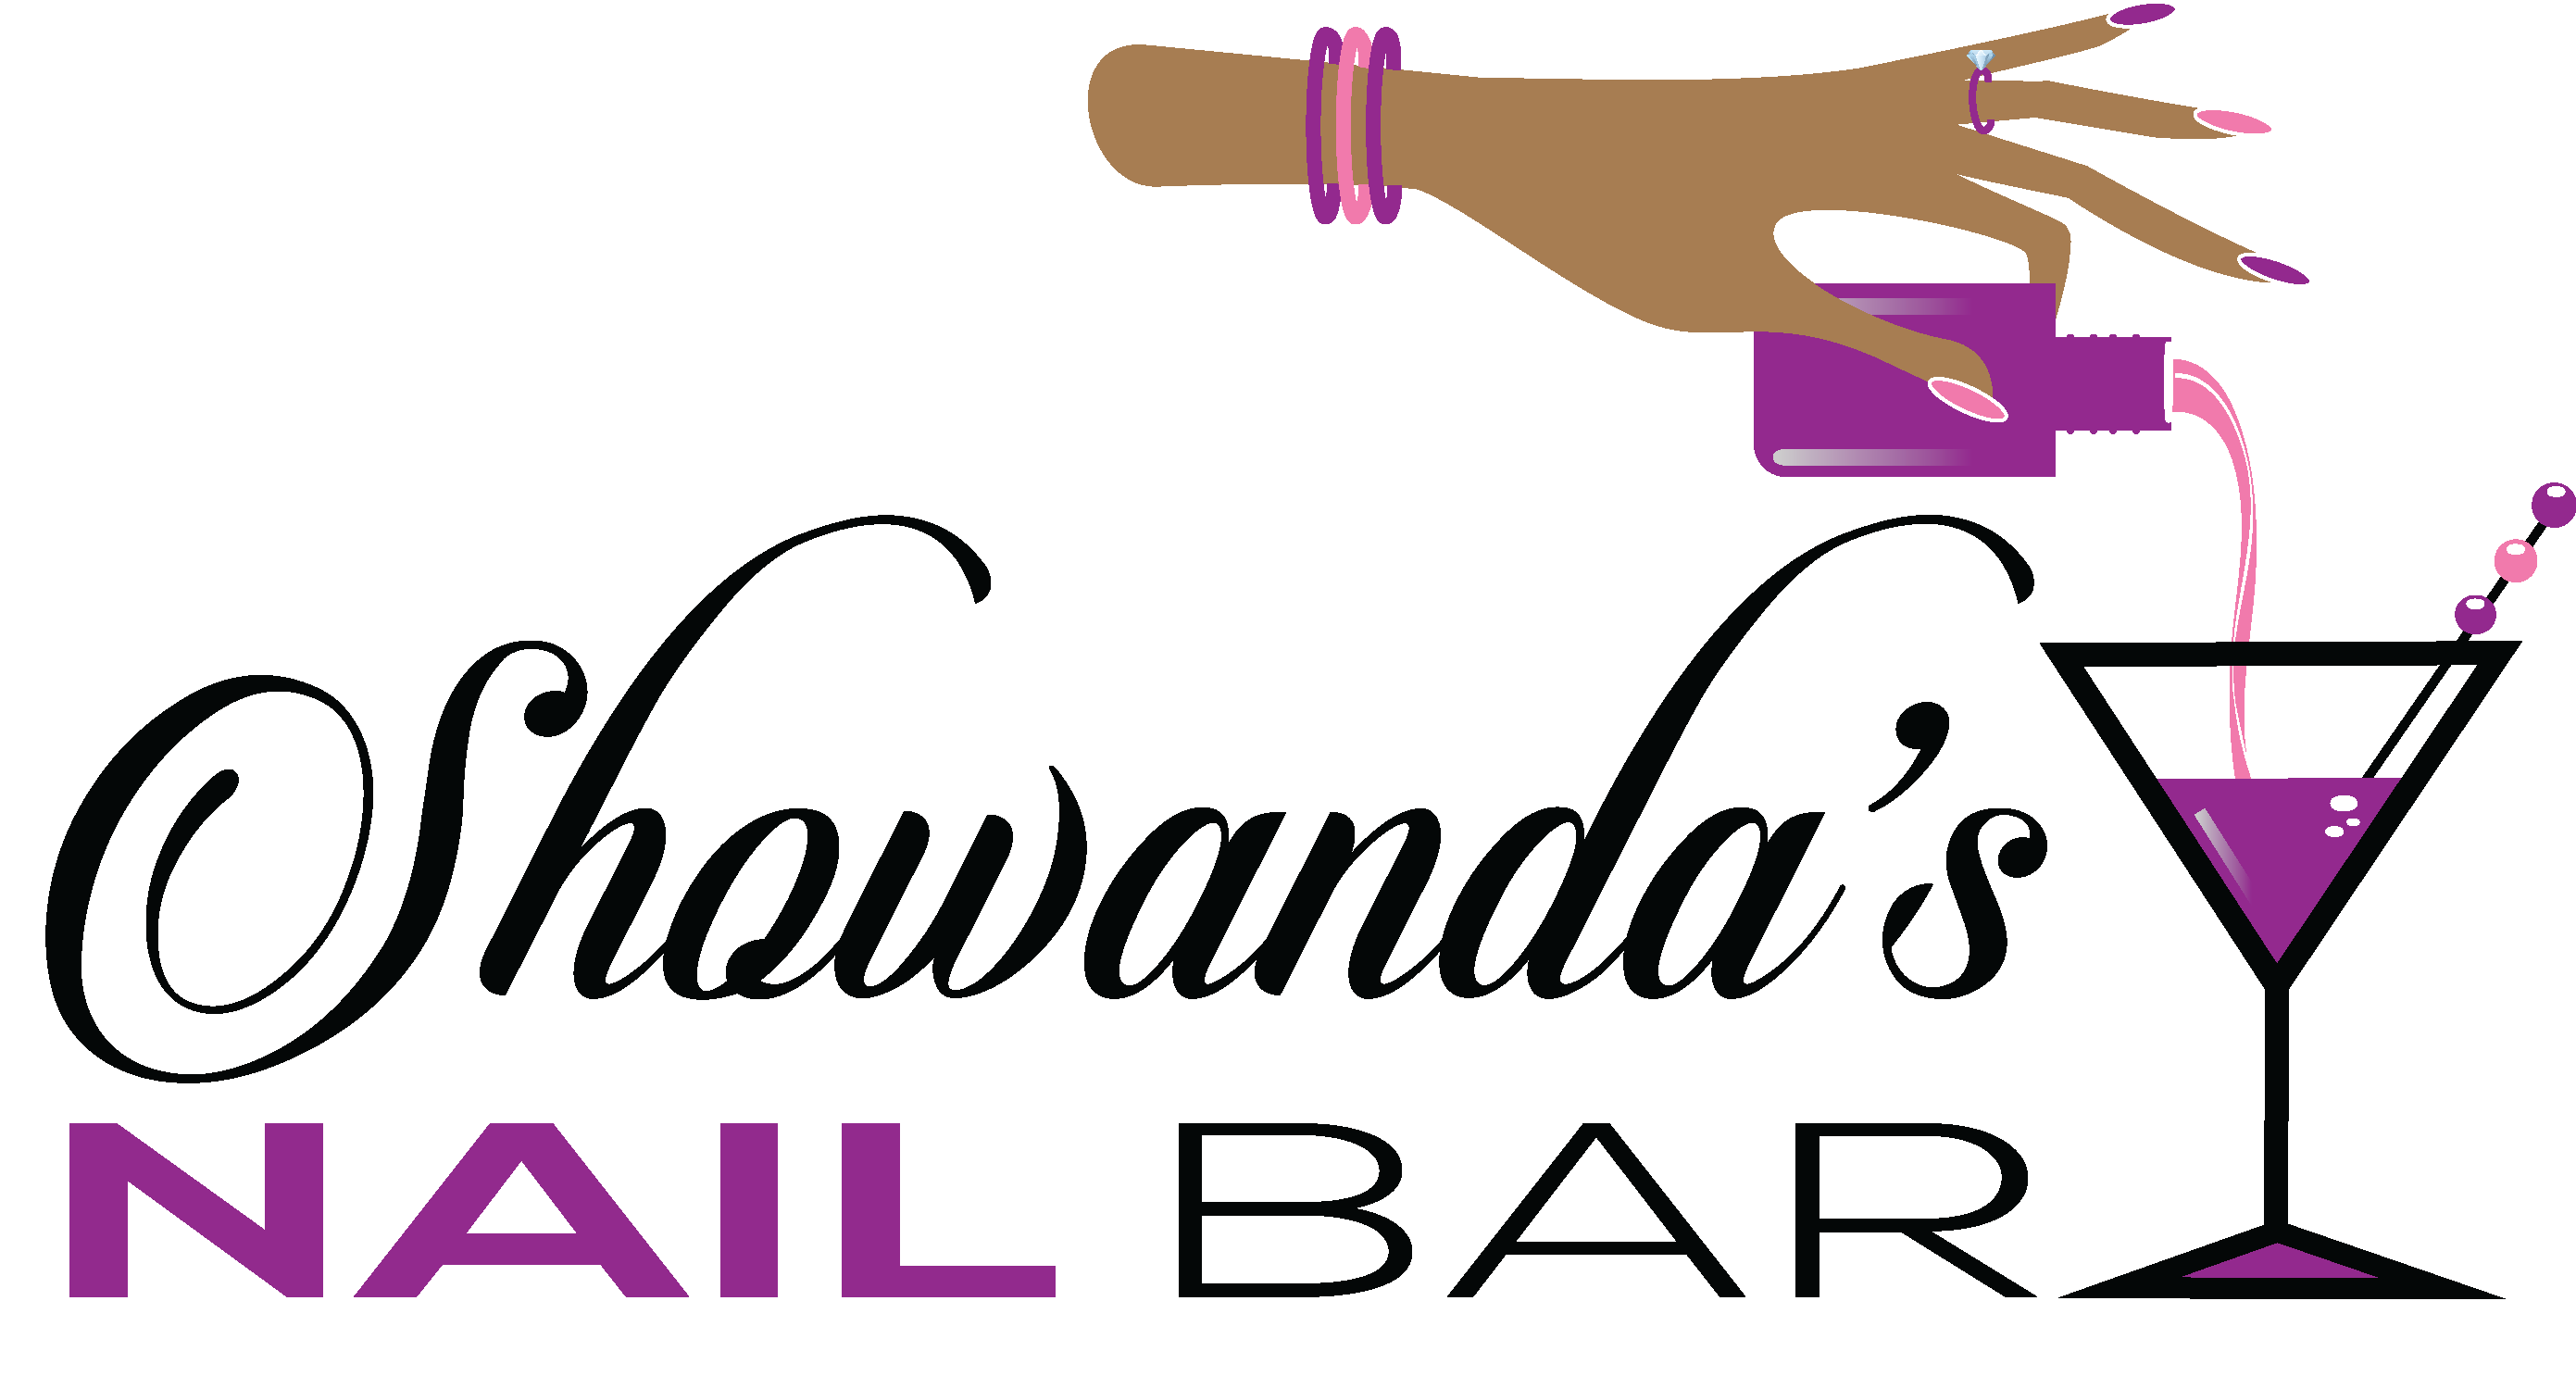 Showanda's Nail Bar